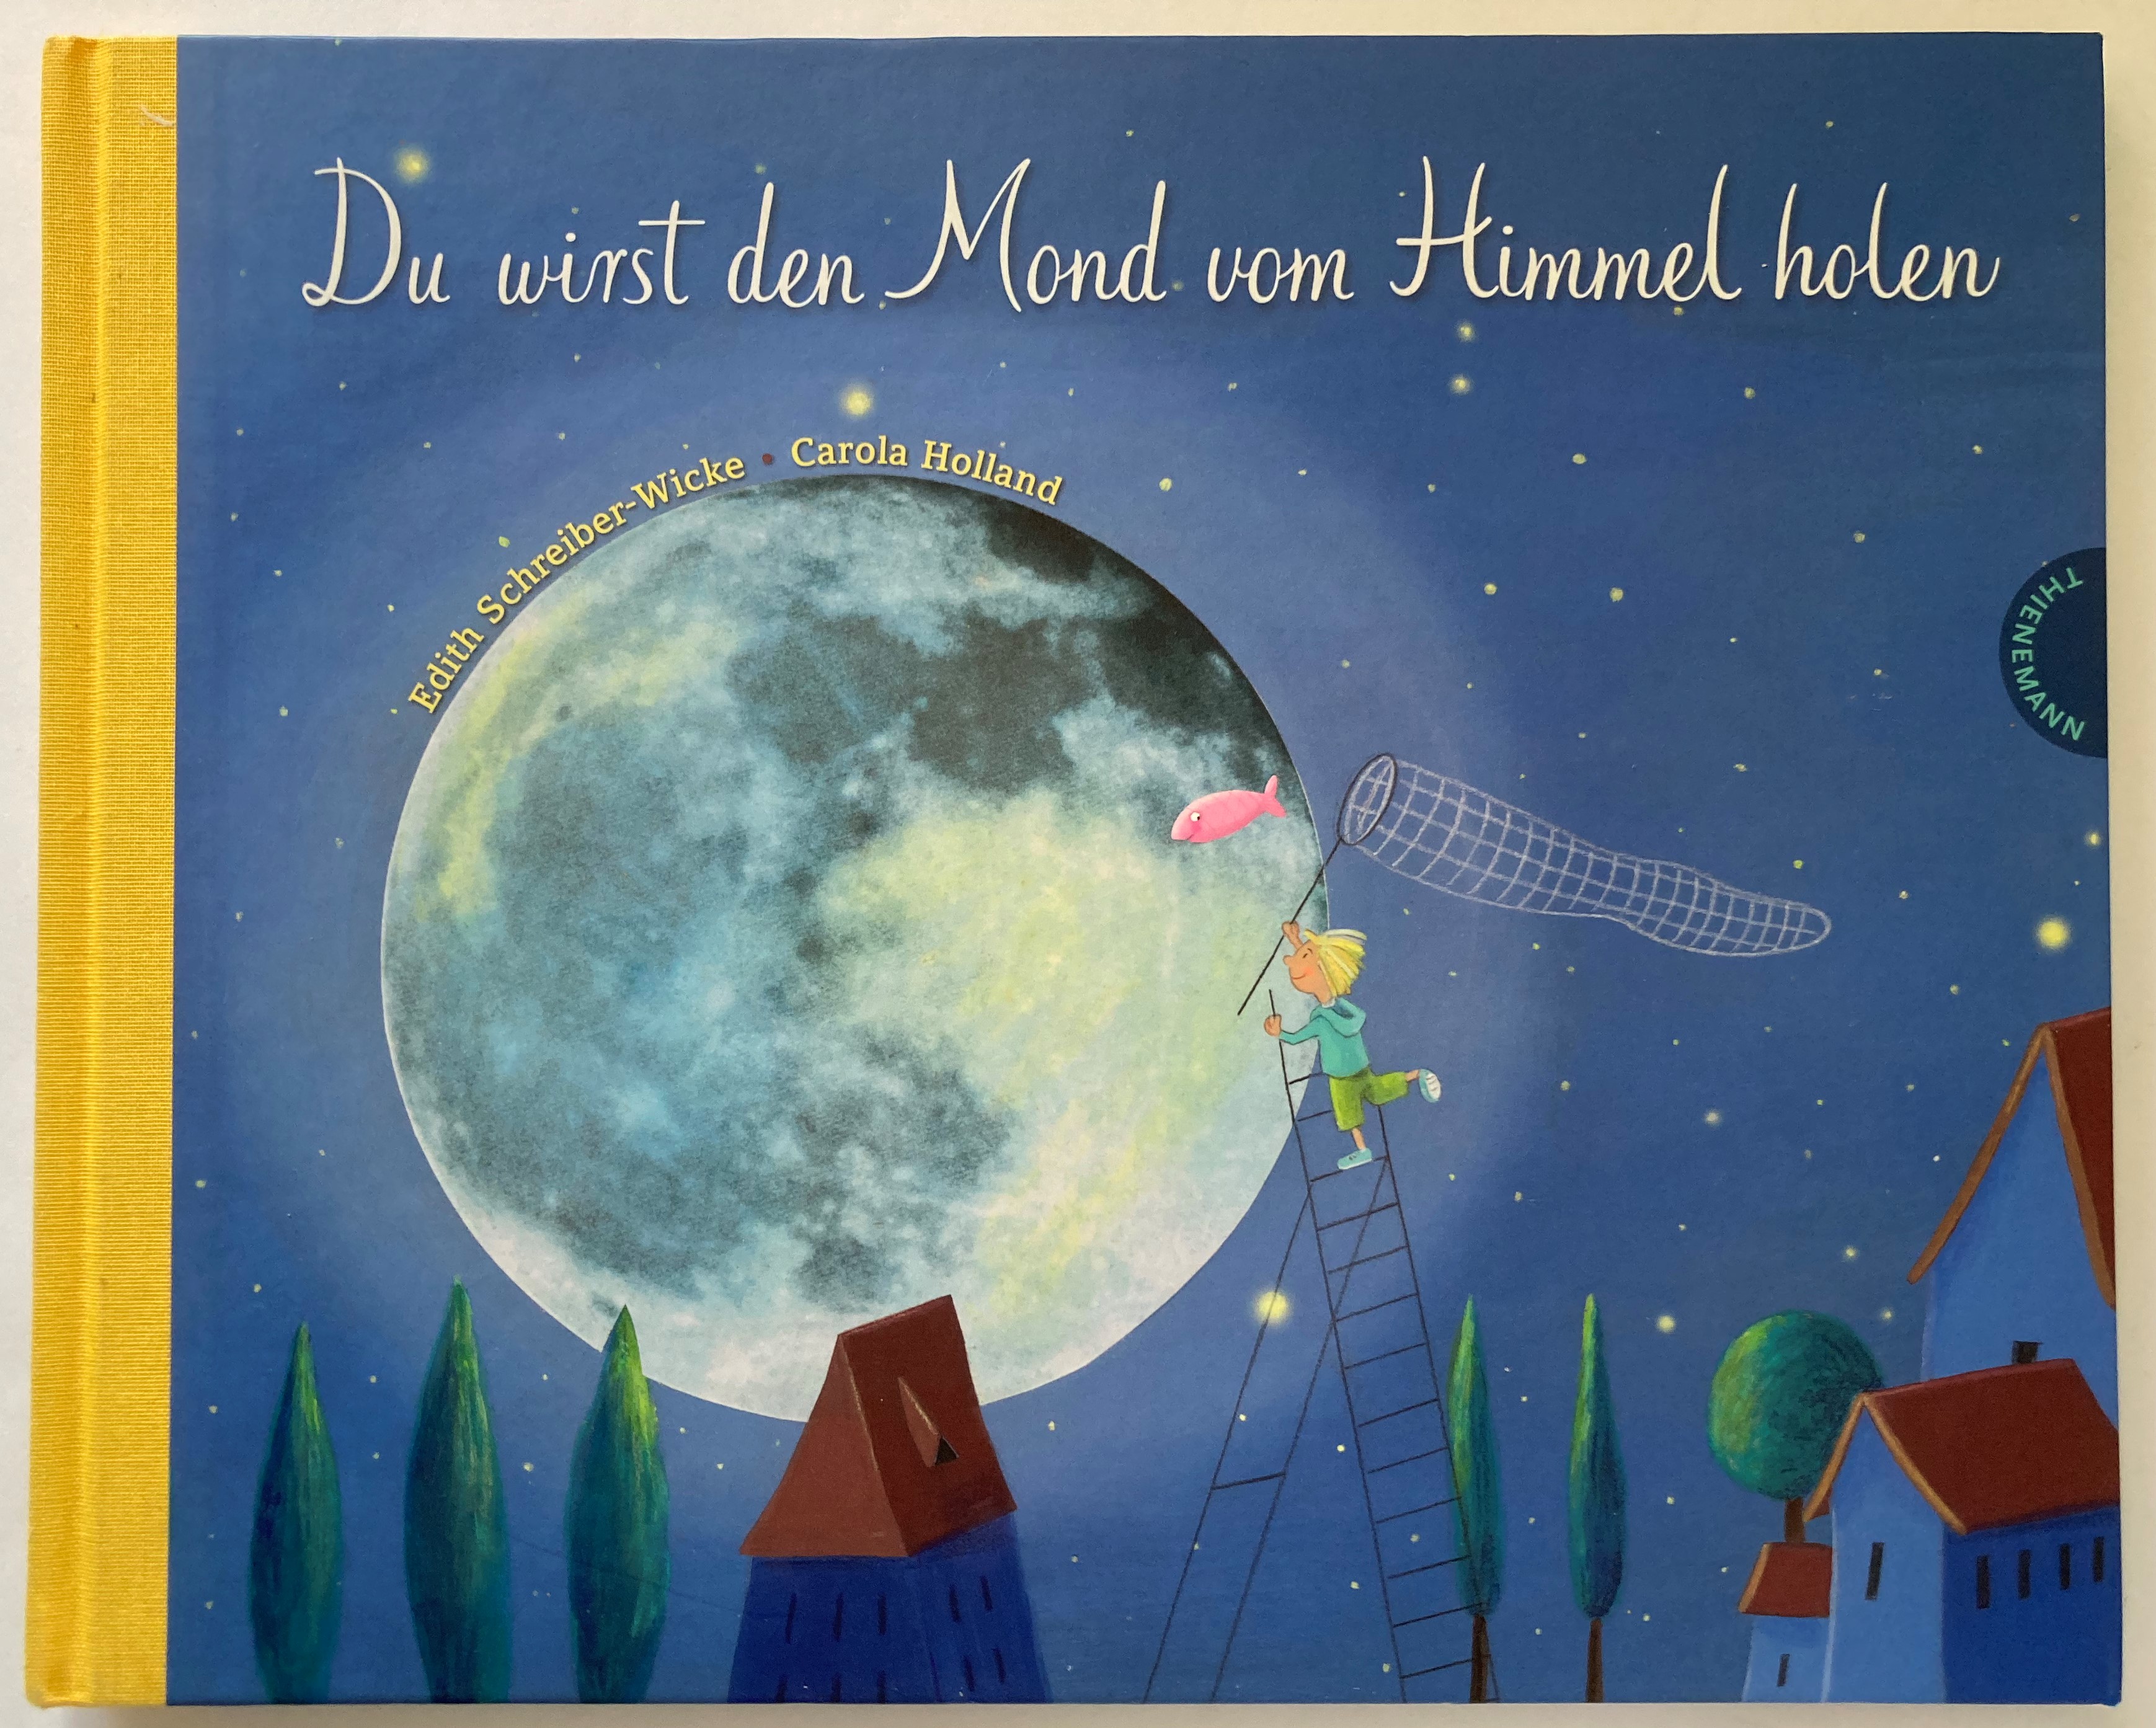 Schreiber-Wicke, Edith/Holland, Carola  Du wirst den Mond vom Himmel holen - Ein Bilderbuch zum Schenken, ein poetischer Begleiter auf einem Stück Lebensweg 